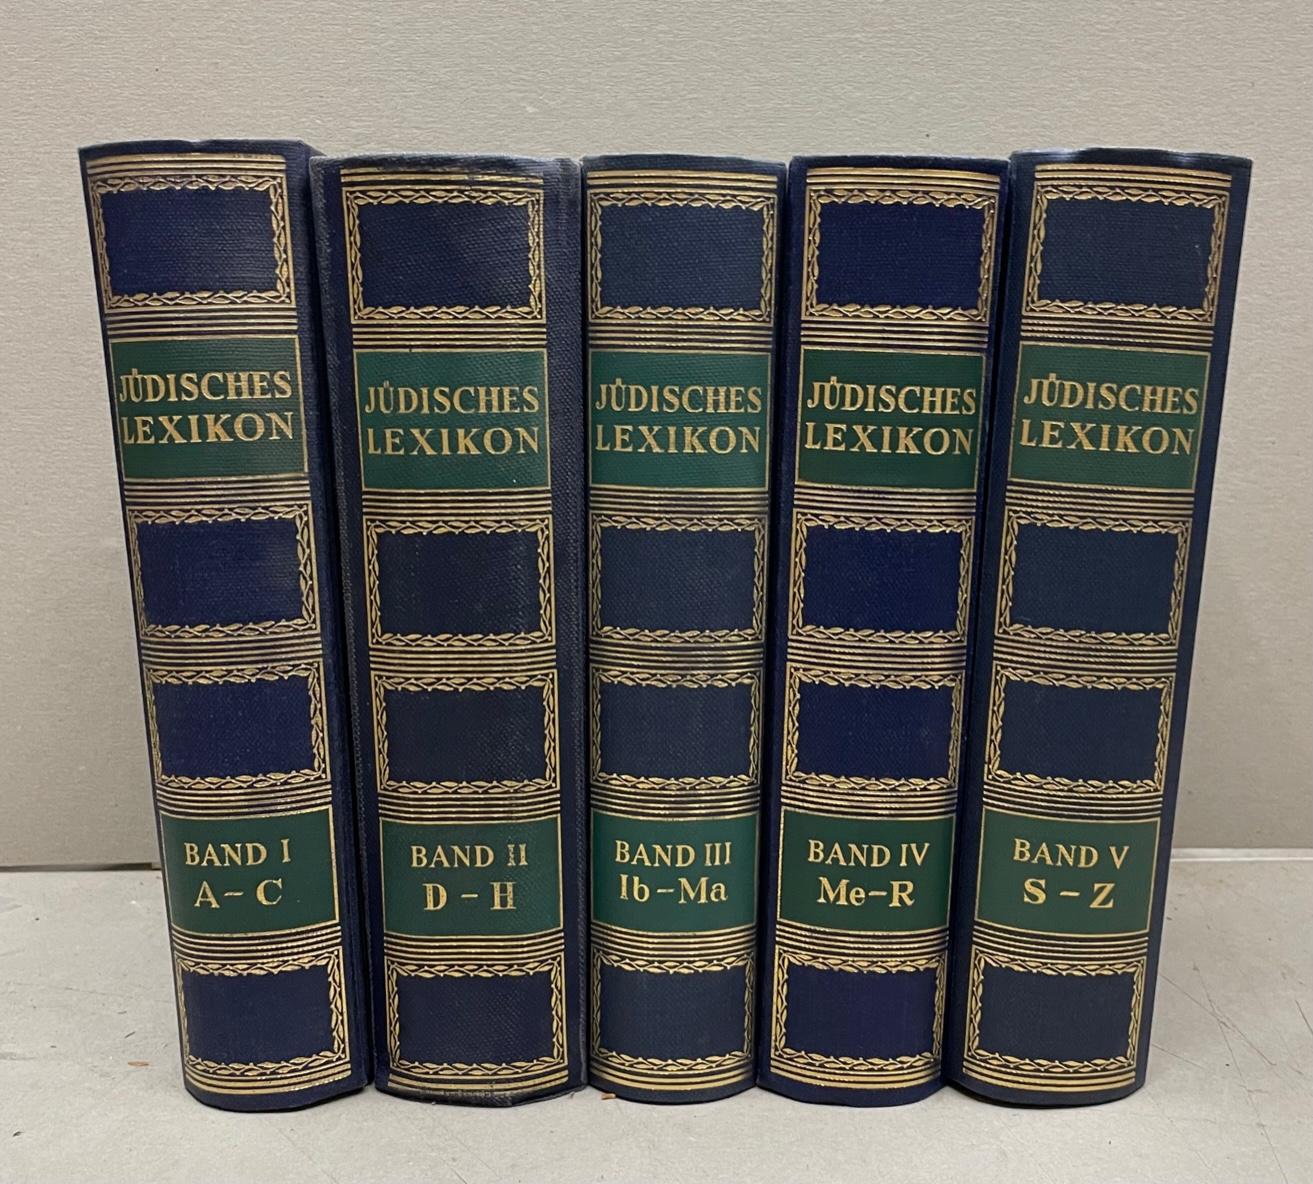 JÜDISCHES LEXIKON .5 Bde. (Komplett). Ein enzyklopädisches Handbuch des jüdischen Wissens. - JUEDISCHES LEXIKON - Erste Originalausgabe